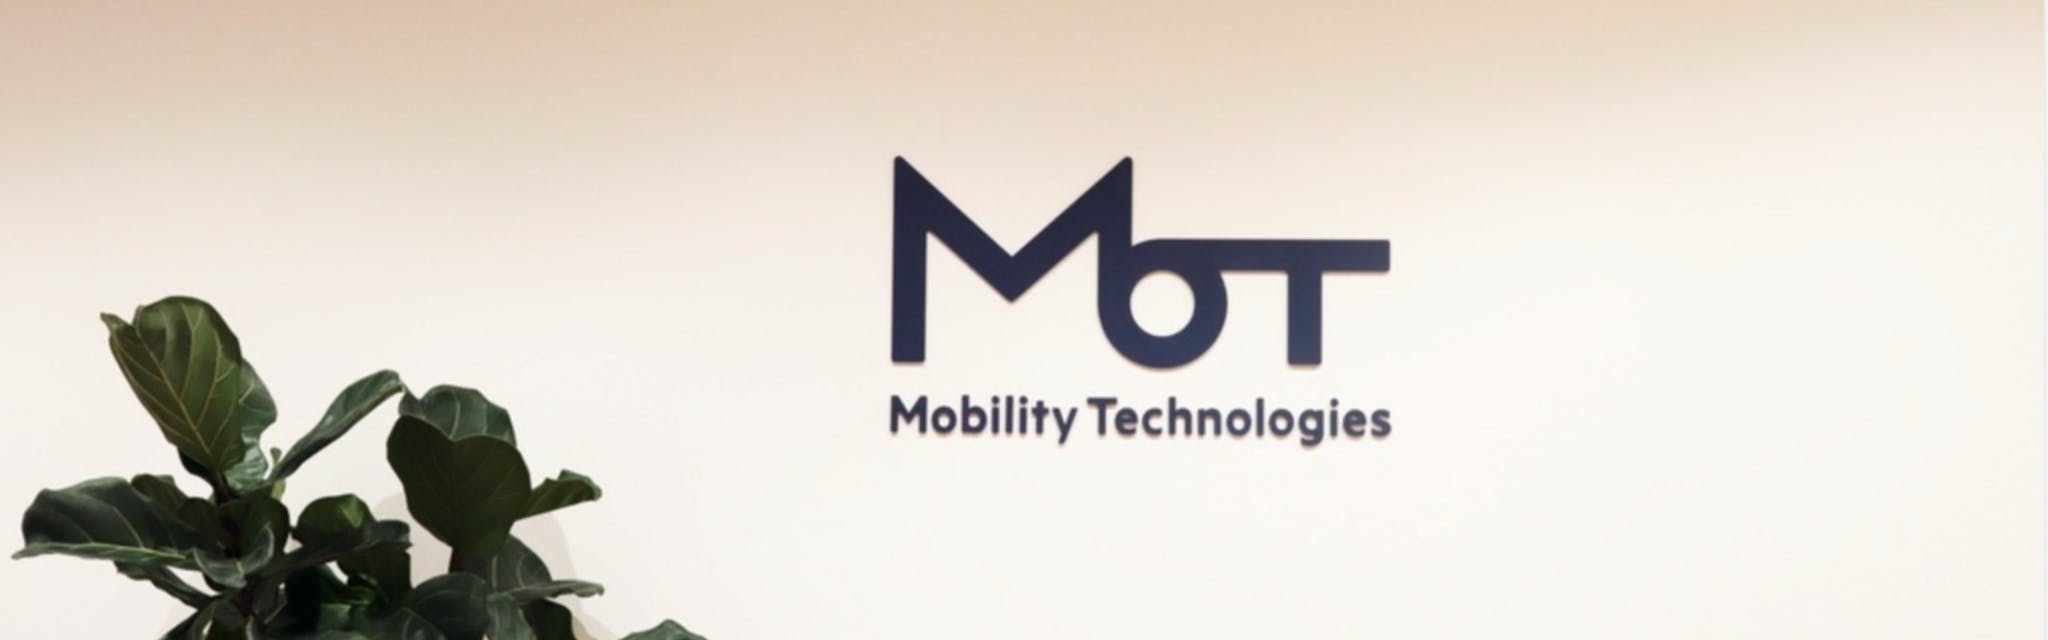 株式会社Mobility Technologies - メイン画像